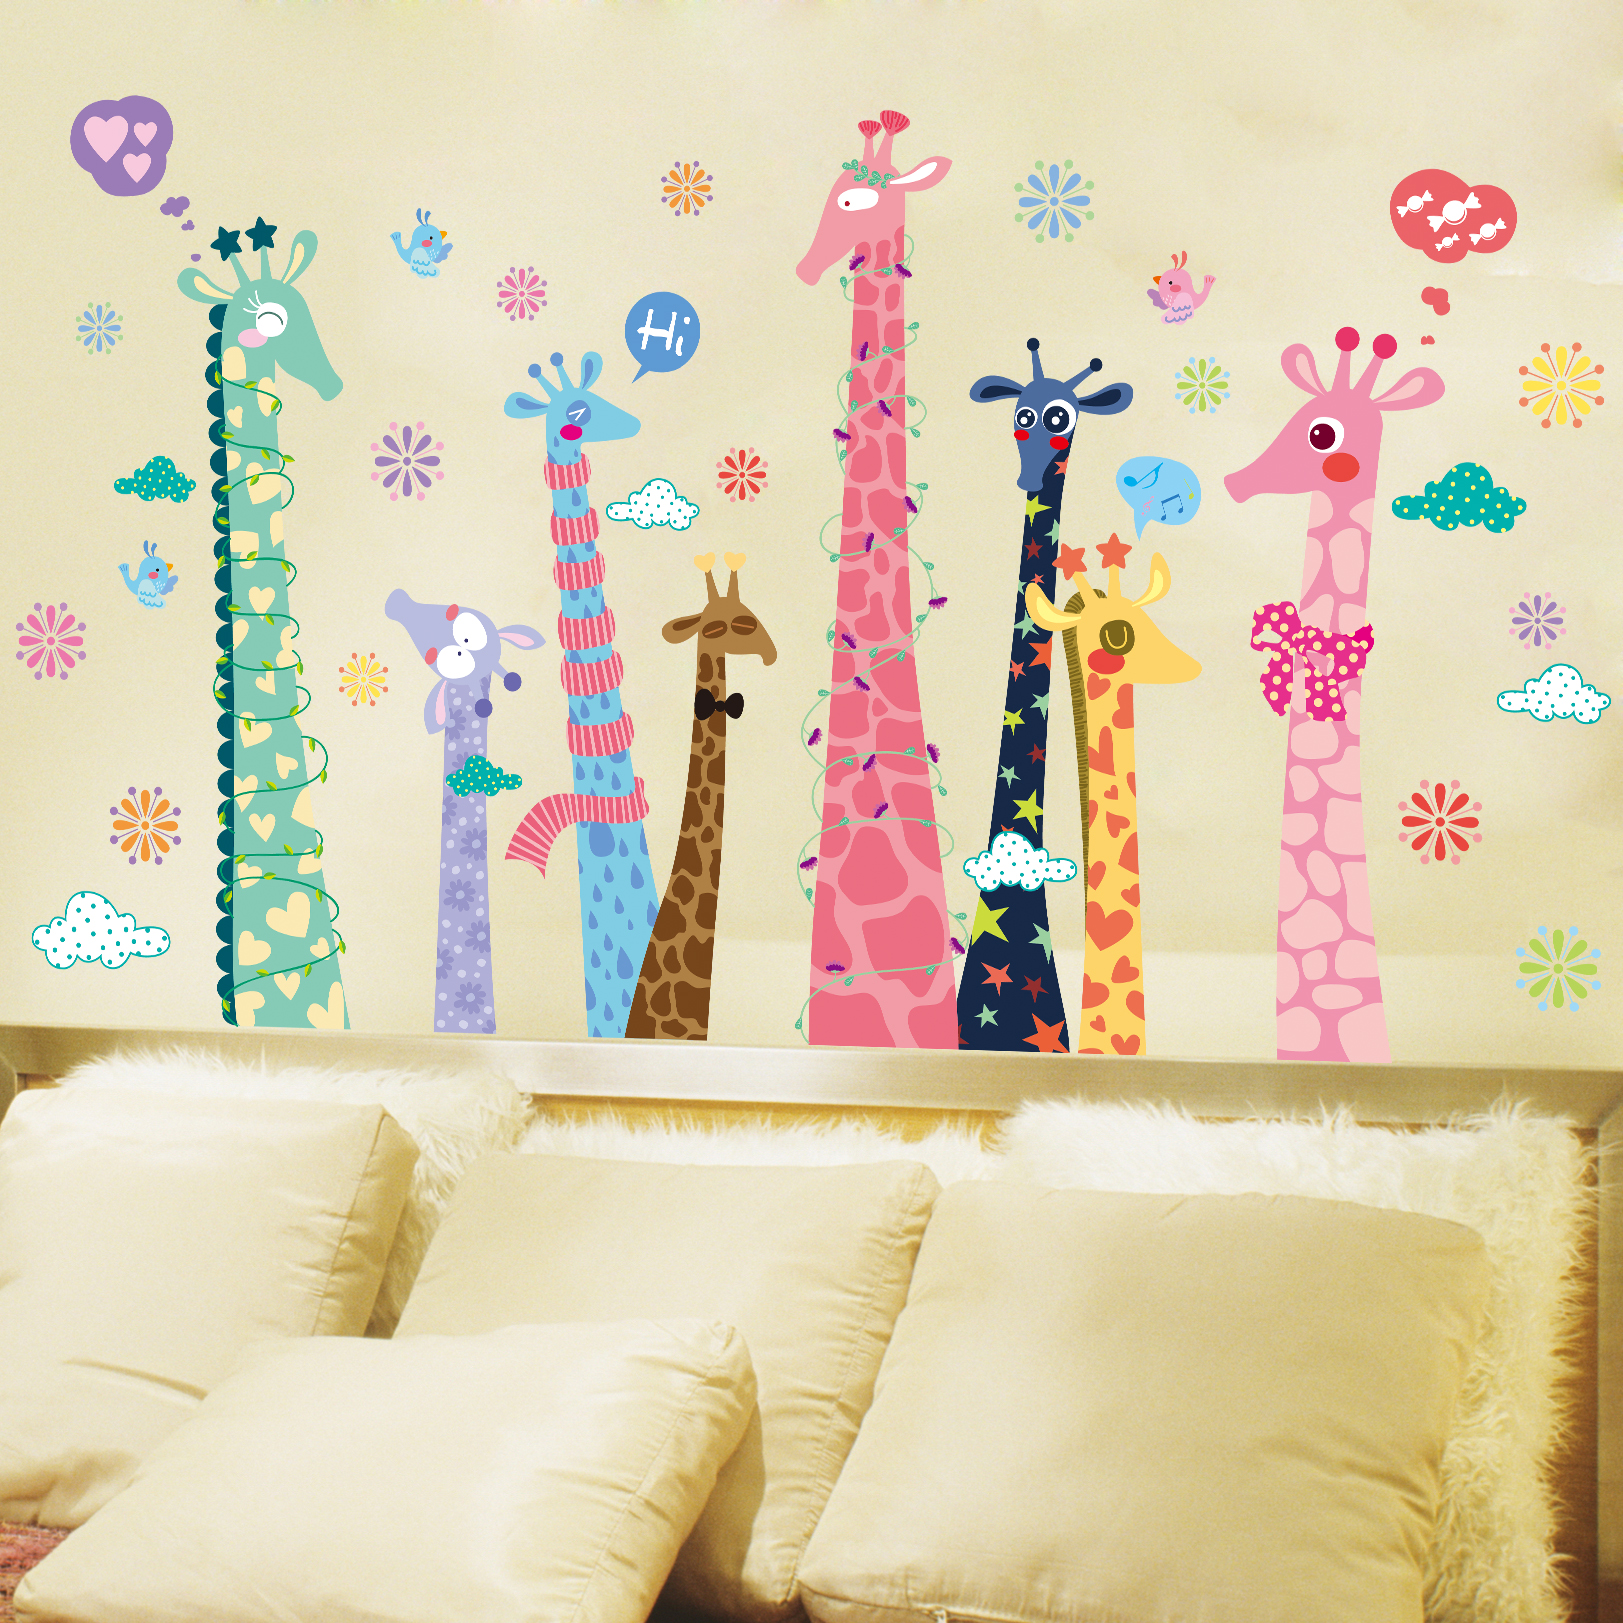 大型贴花可爱花样长颈鹿 卡通宝宝儿童房间背景布置可移除墙贴画